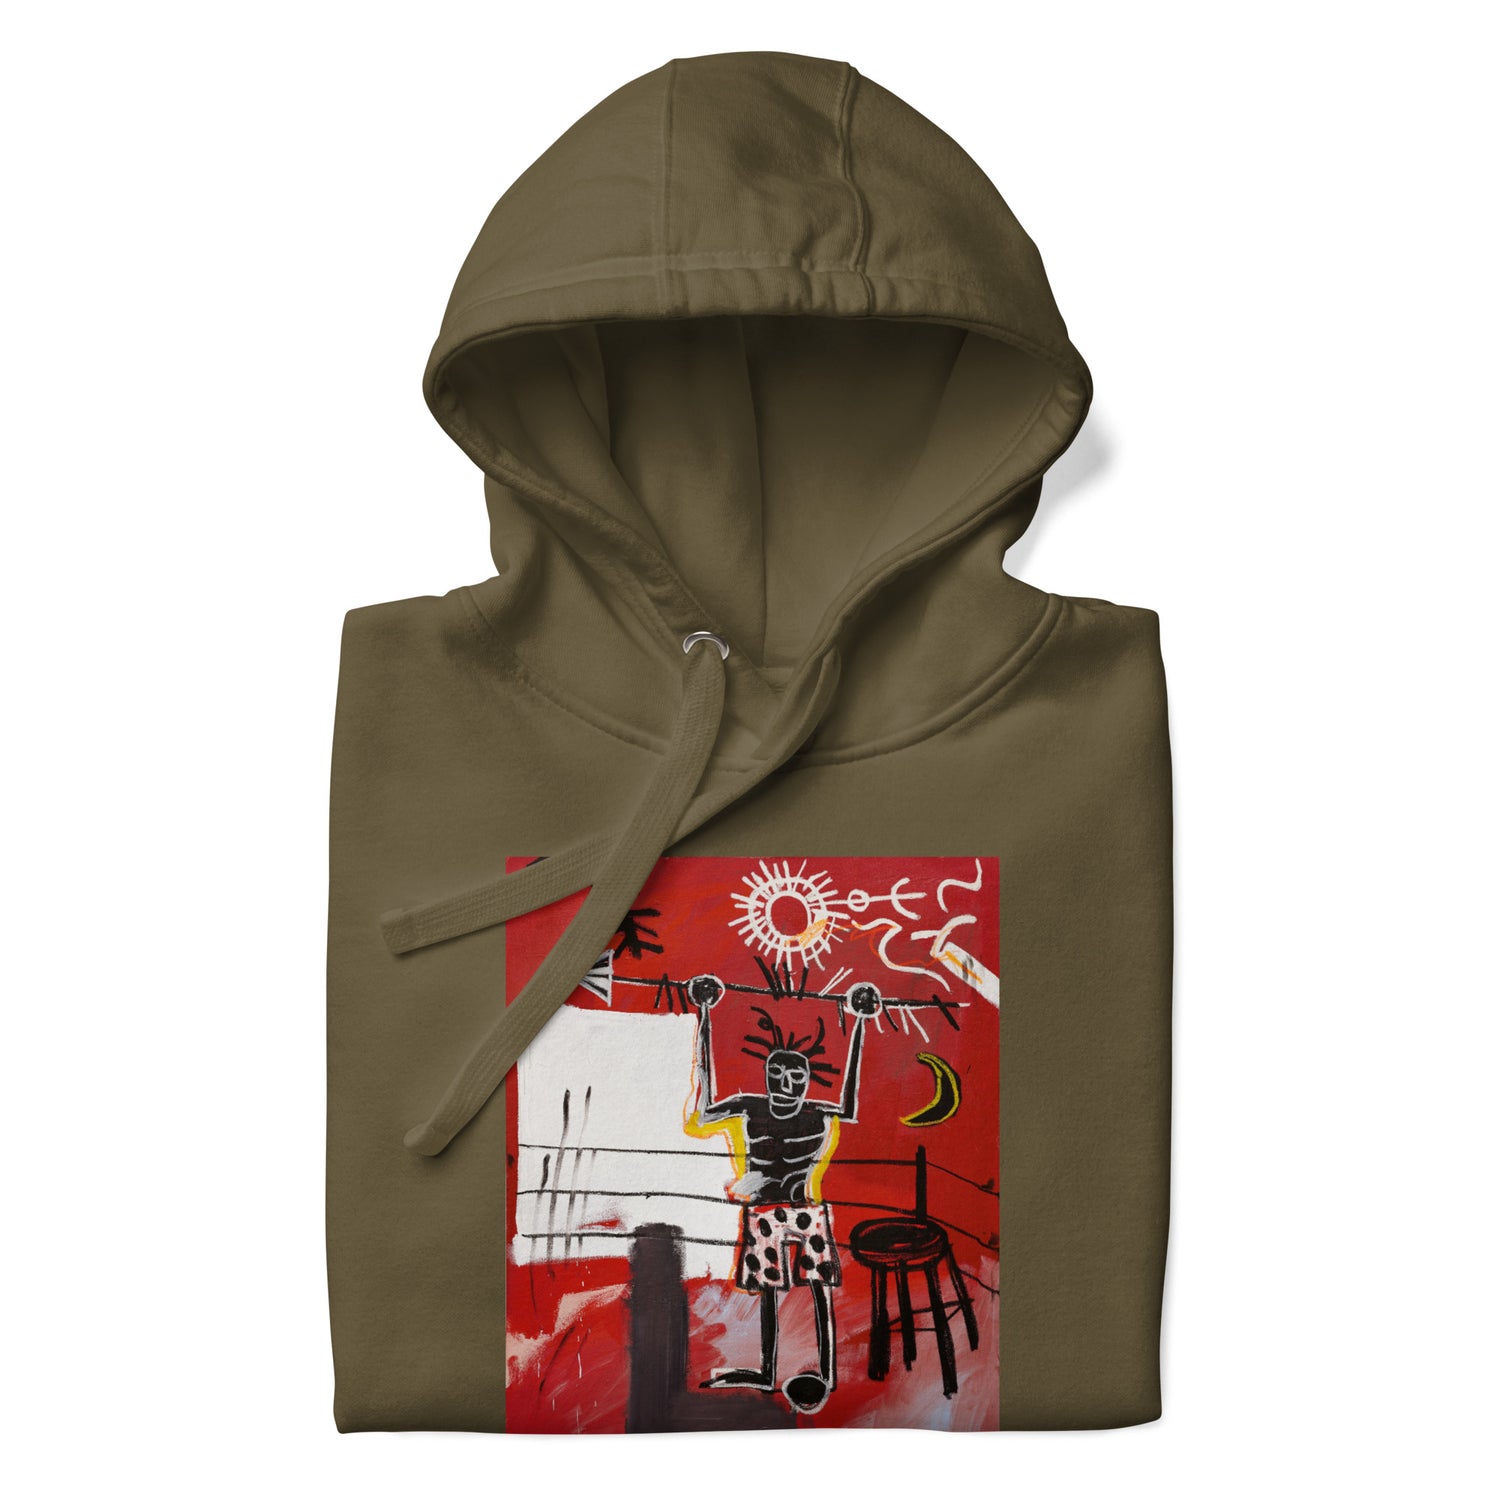 Jean-Michel Basquiat "The Ring" Artwork Printed Premium Streetwear Sweatshirt Hoodie Olive Green